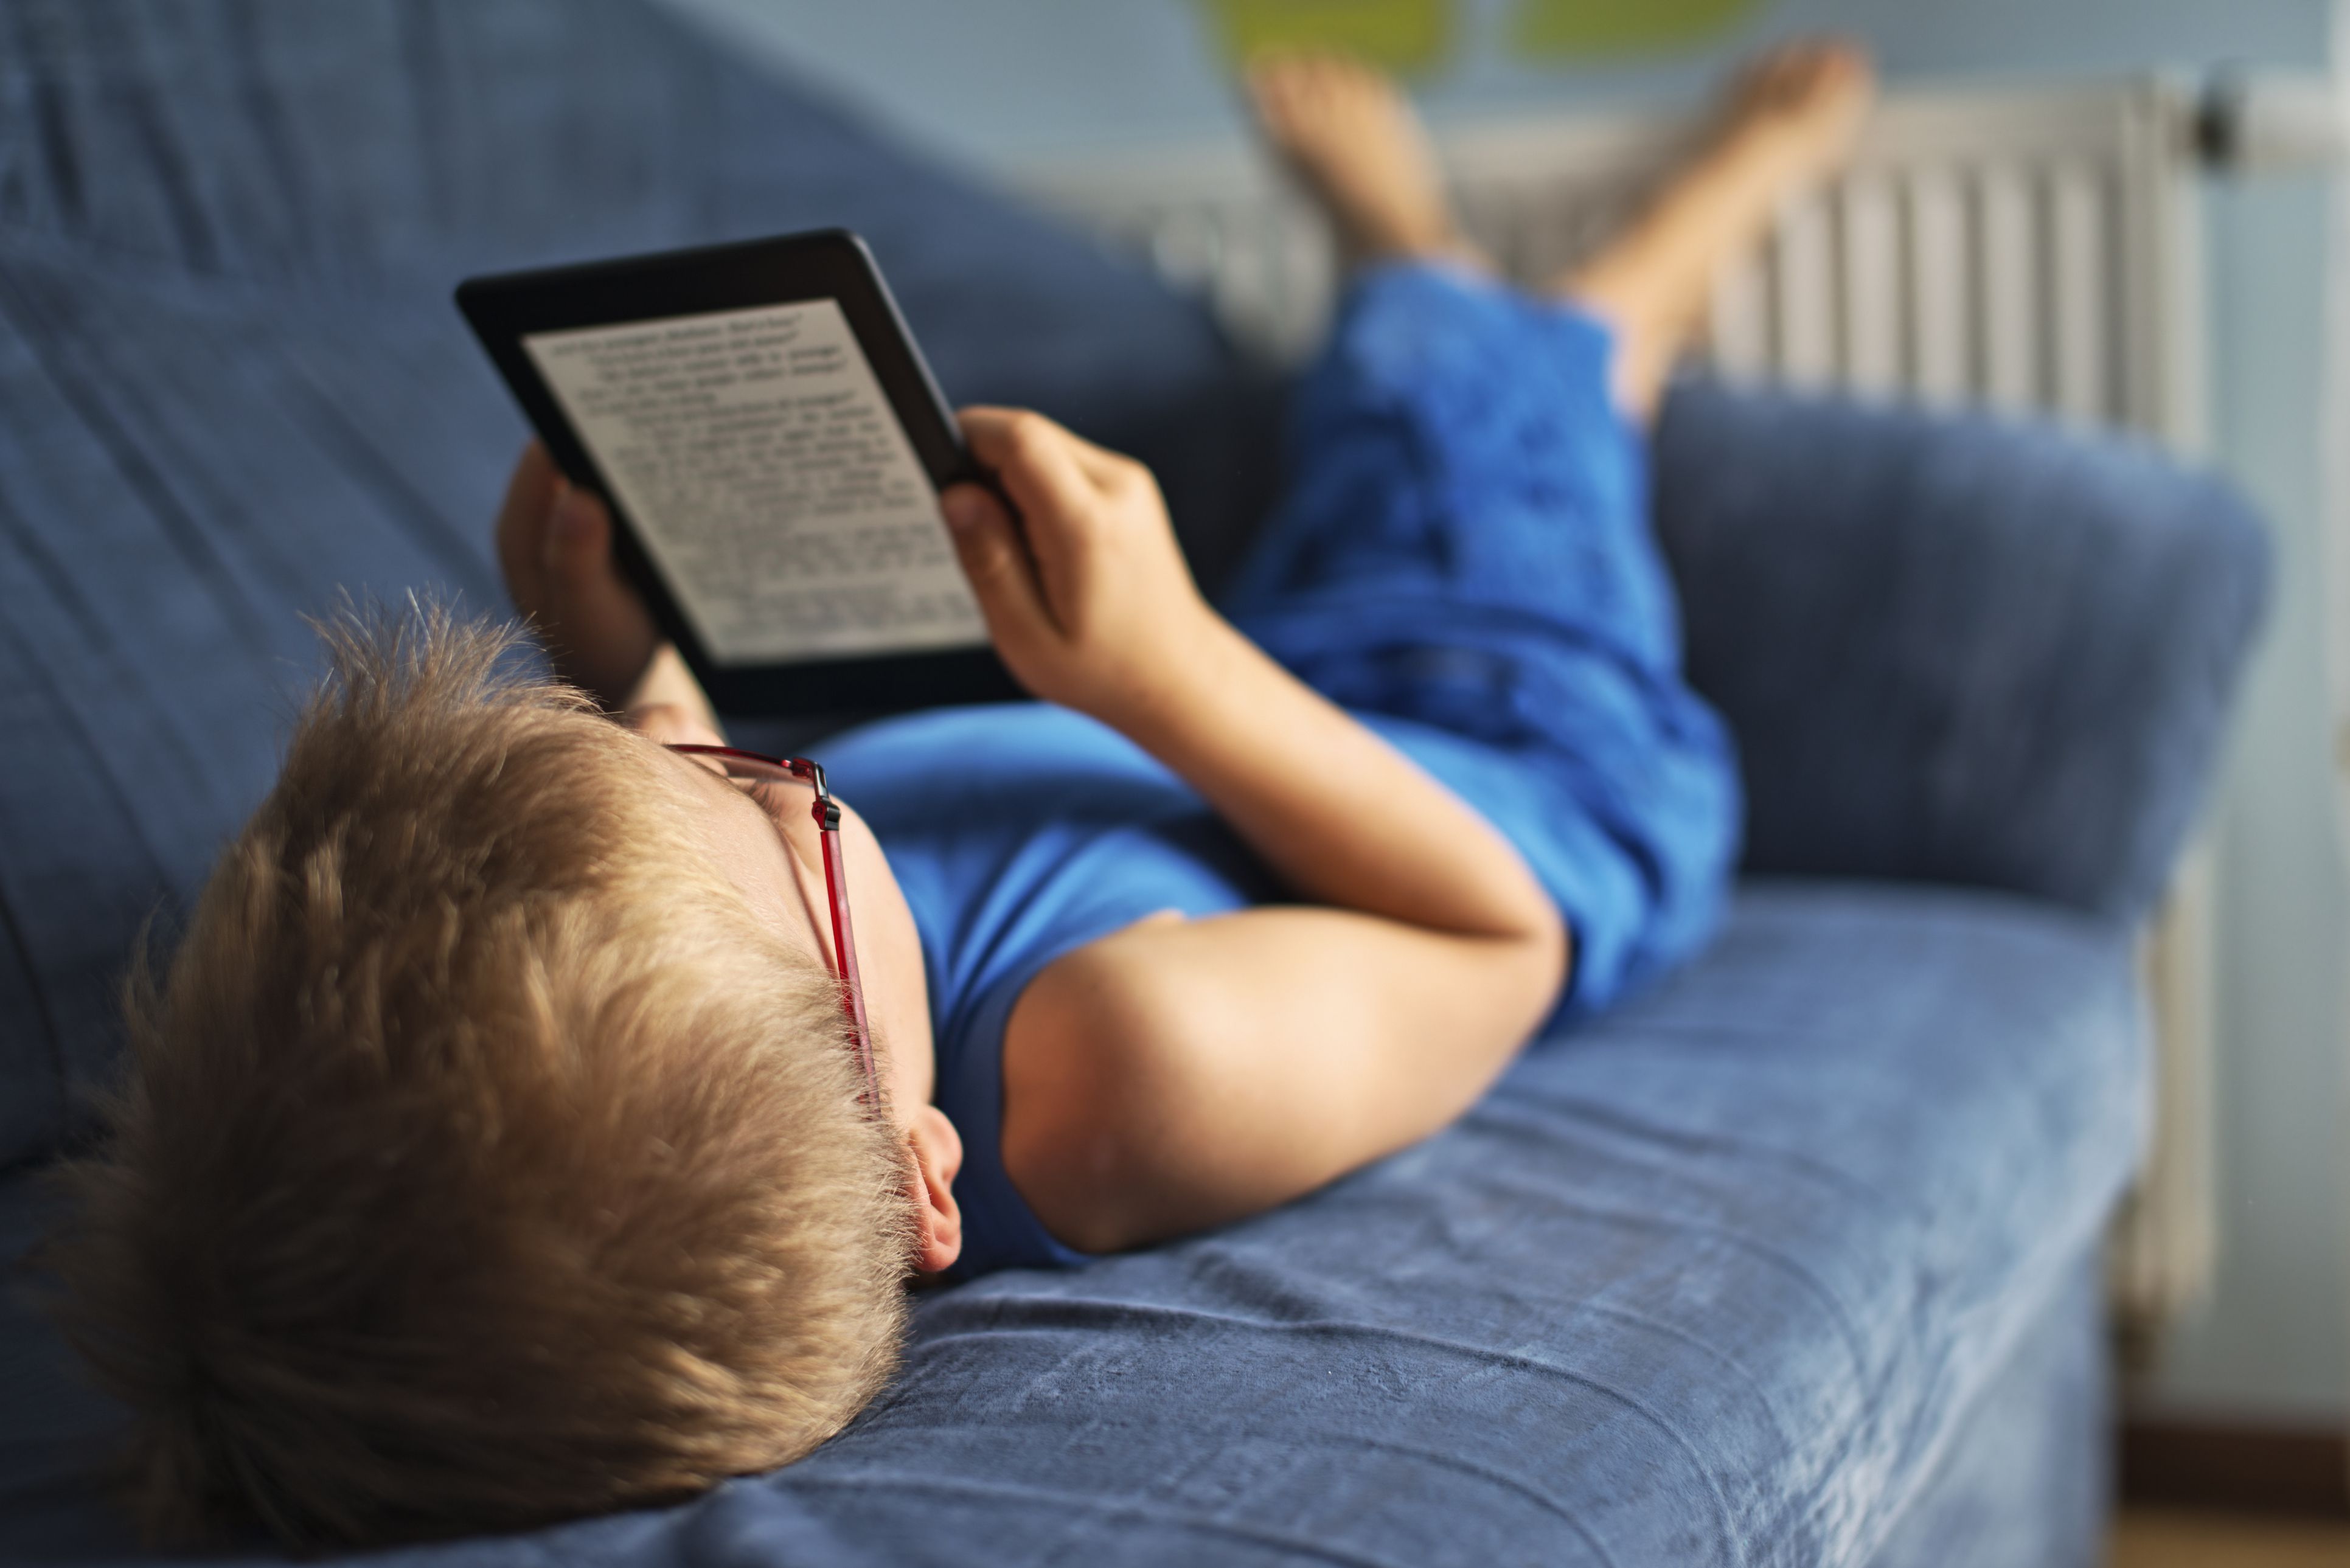 Играть в телефон спать. Чтение лежа. Чтение книг. Подросток с книгой. Ребенок читает лежа.